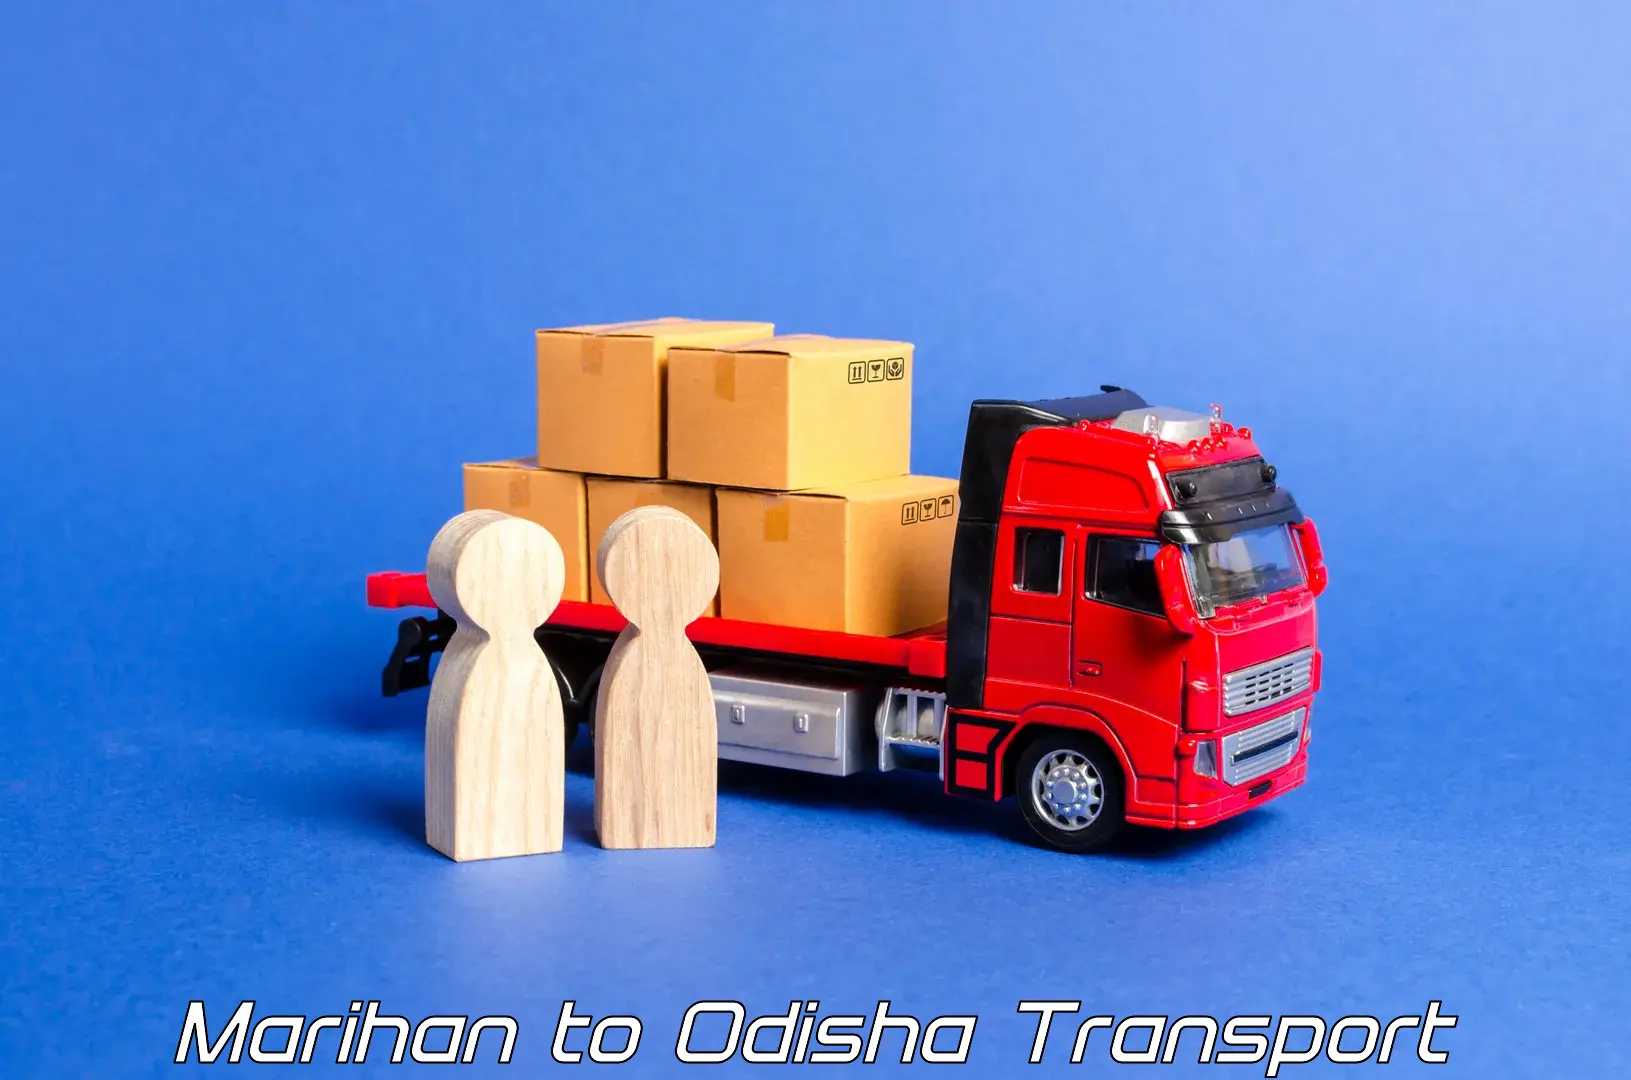 Intercity goods transport Marihan to Baleswar